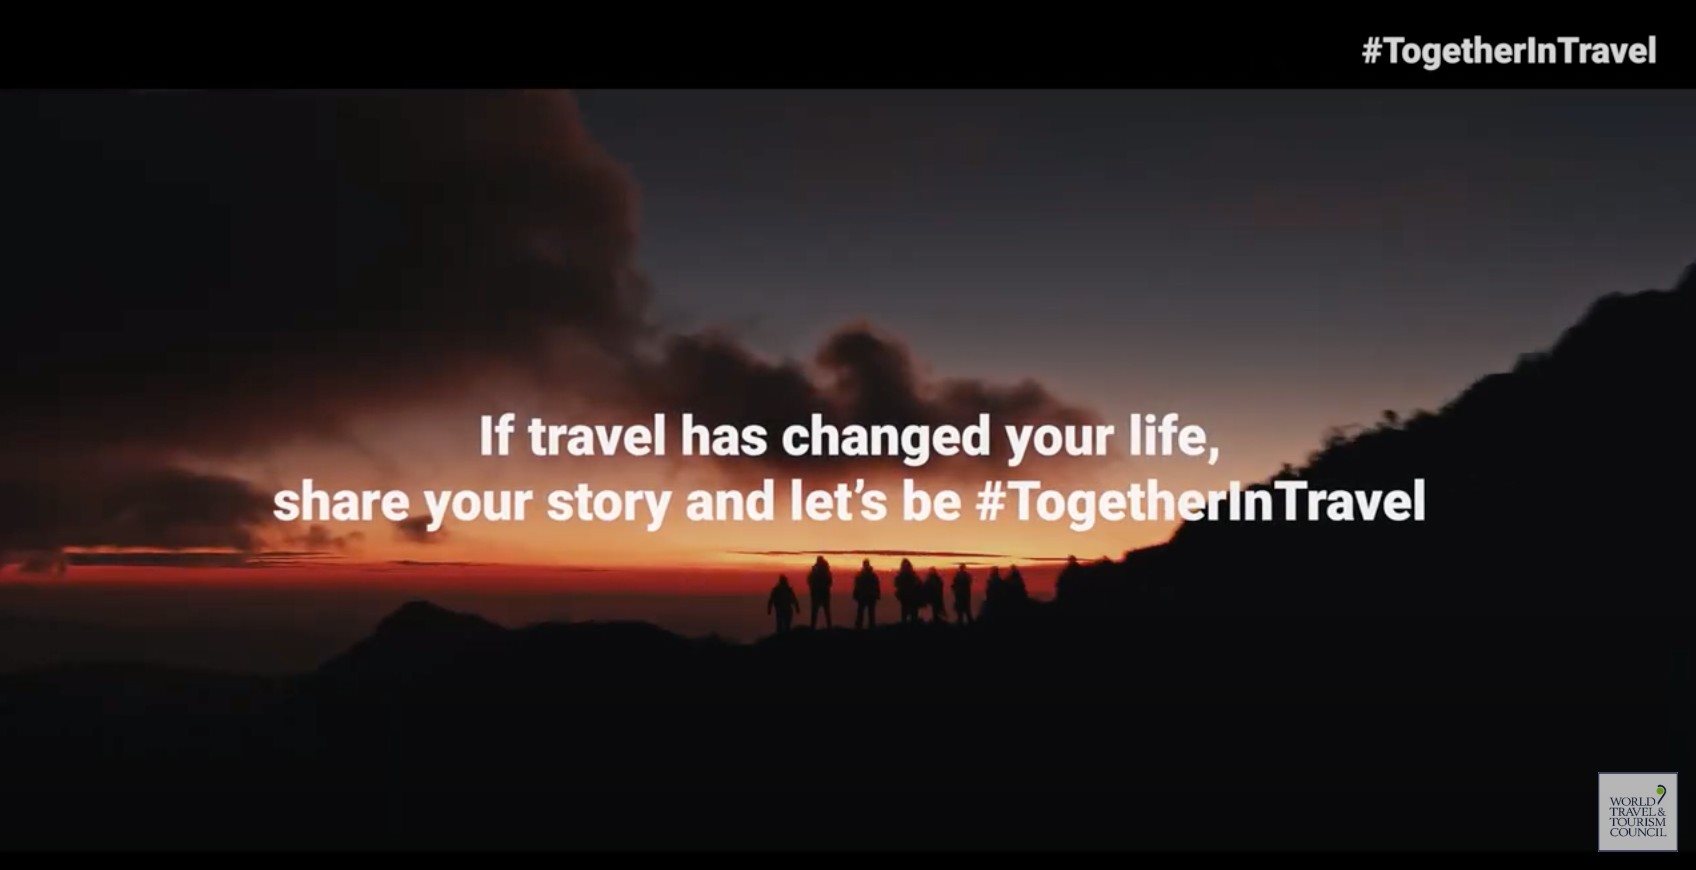 Se viajar mudou a sua vida, compartilhe sua história e fiquemos #TogetherInTravel (#JuntosNaViagem)